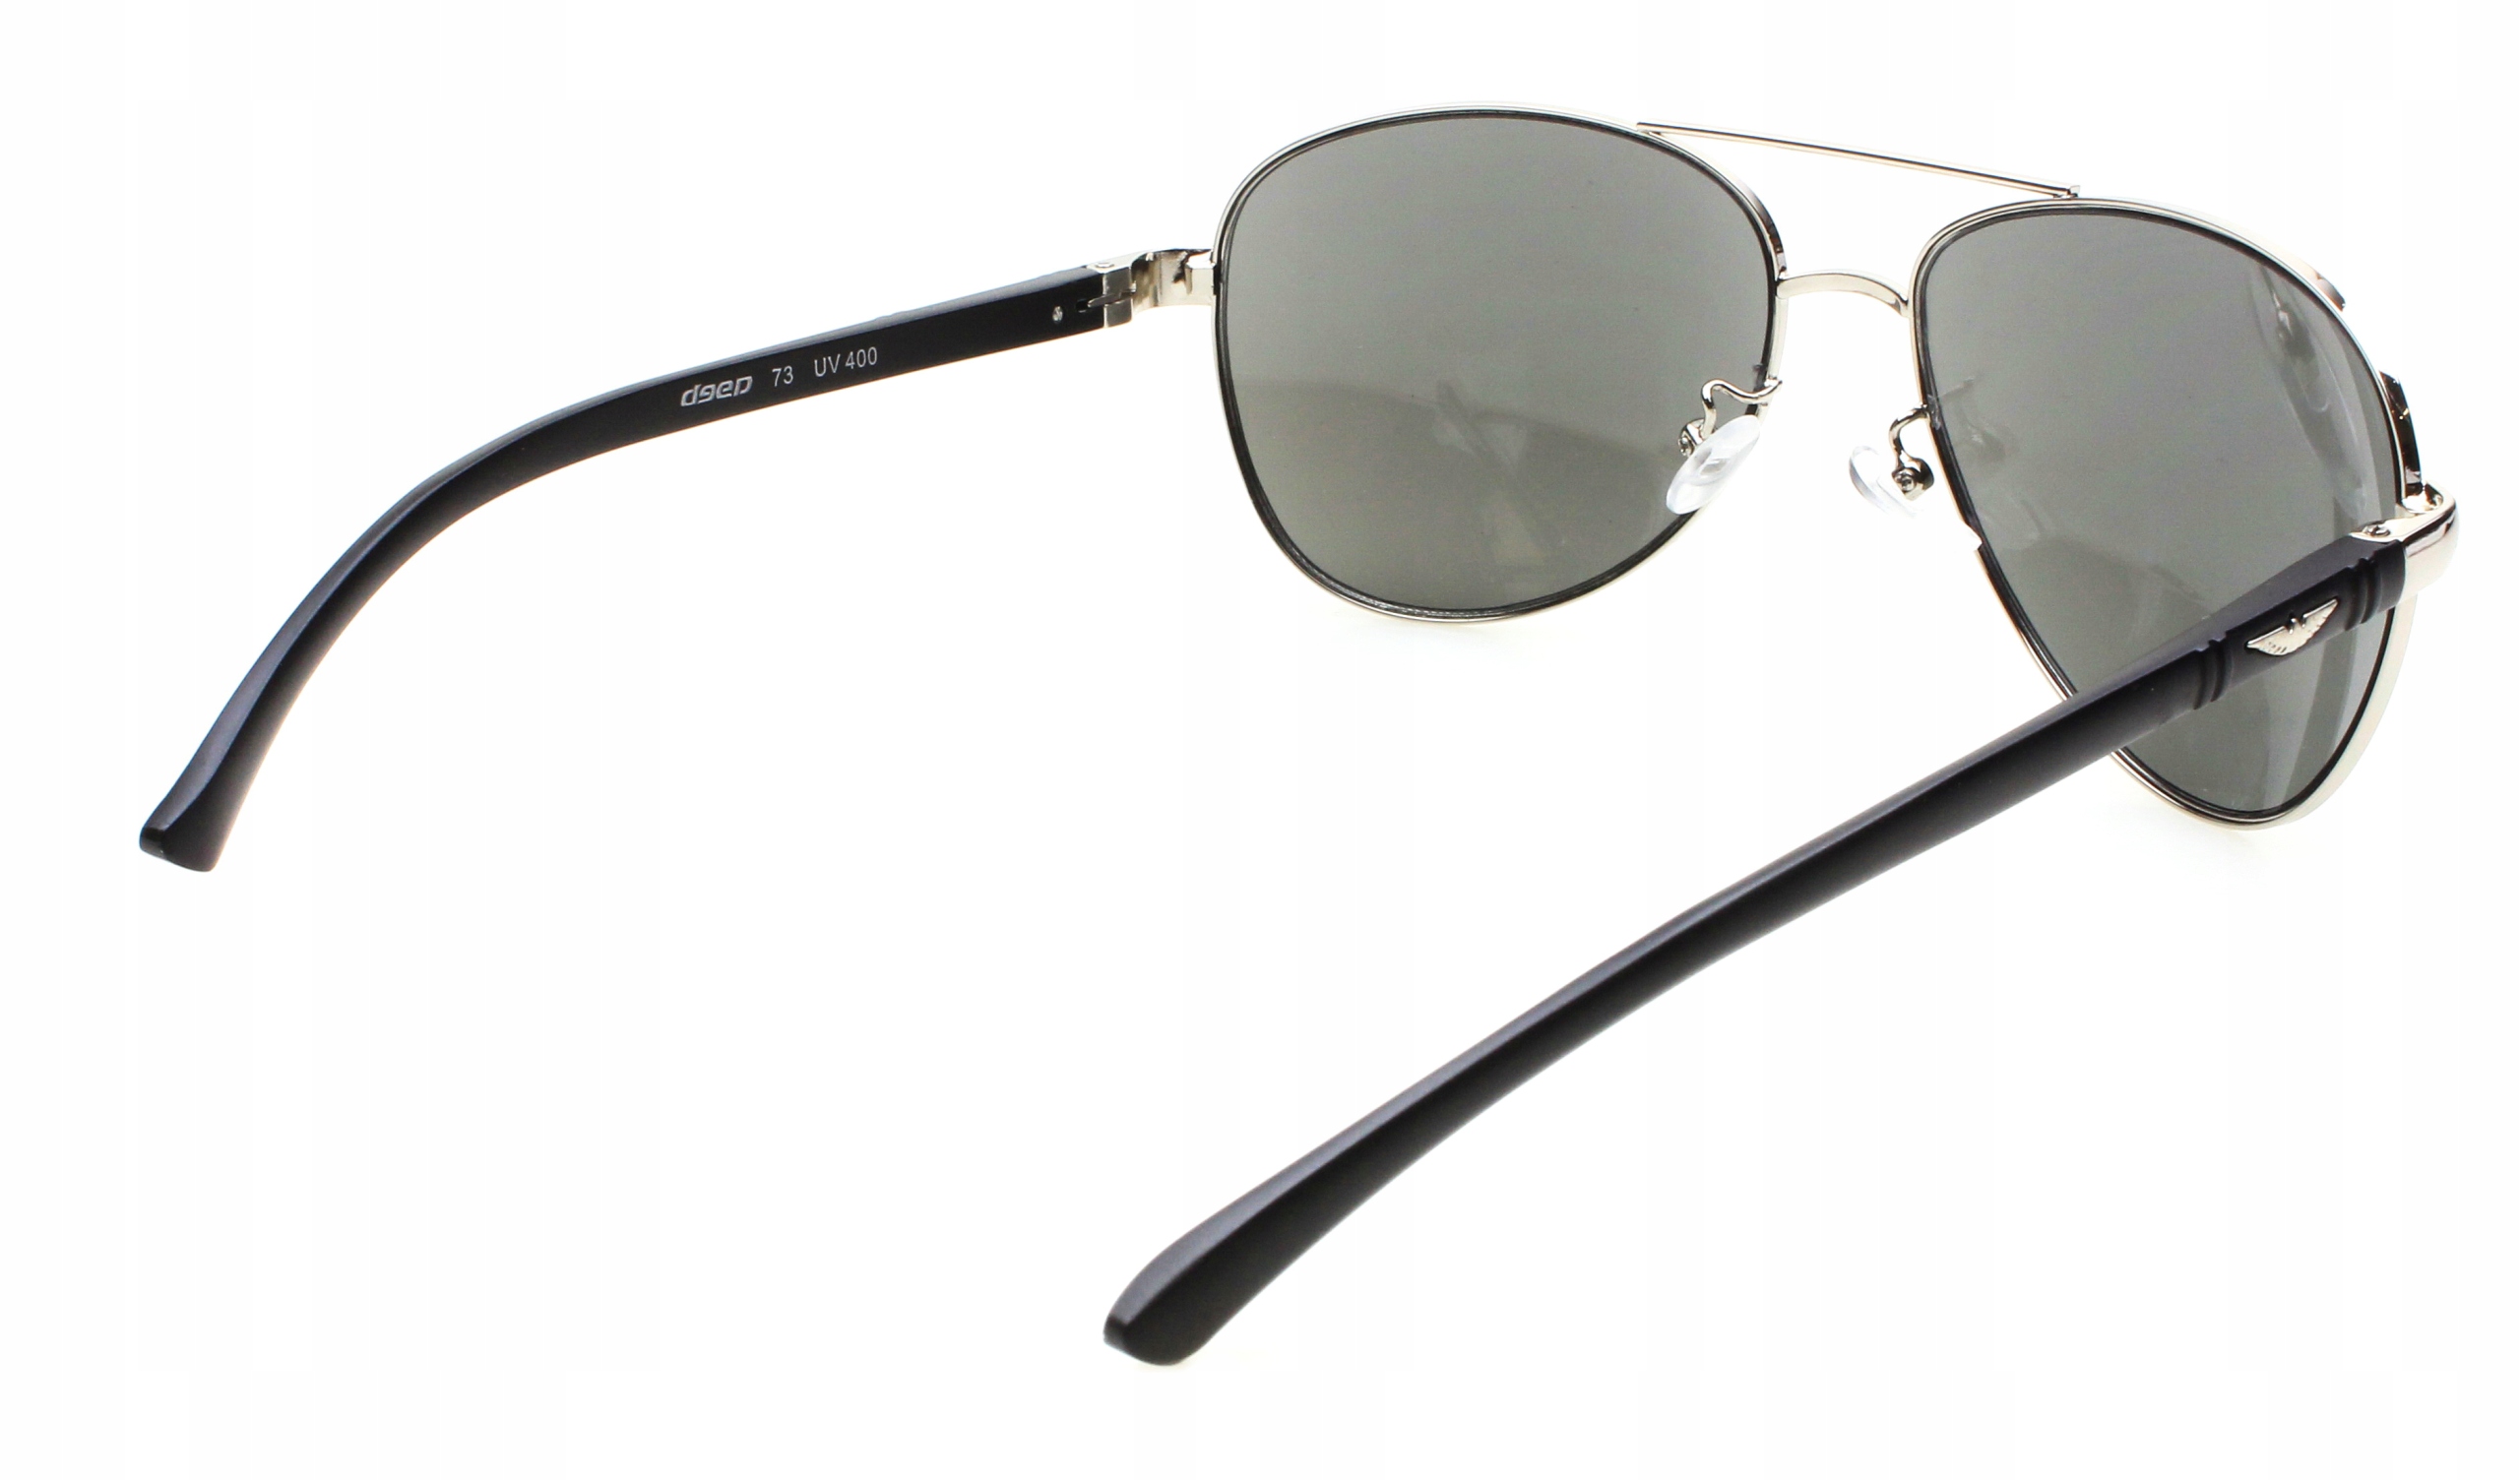  чоловічі сонцезахисні окуляри з металевим пілотом Protection Type UV filter - 400 cat. 3